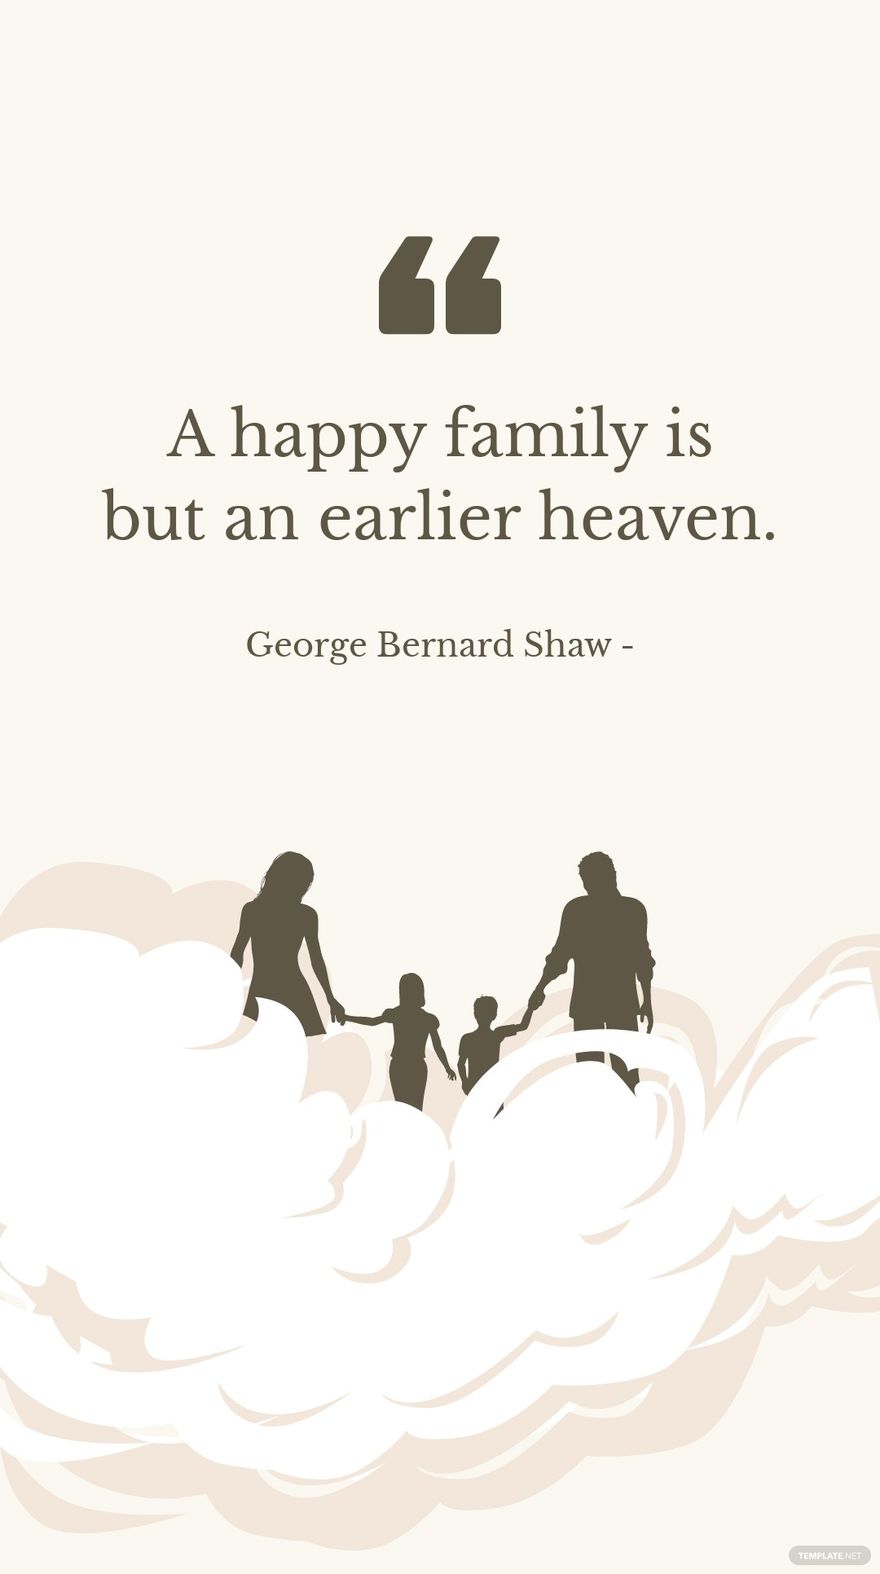 George Bernard Shaw - A happy family is but an earlier heaven.